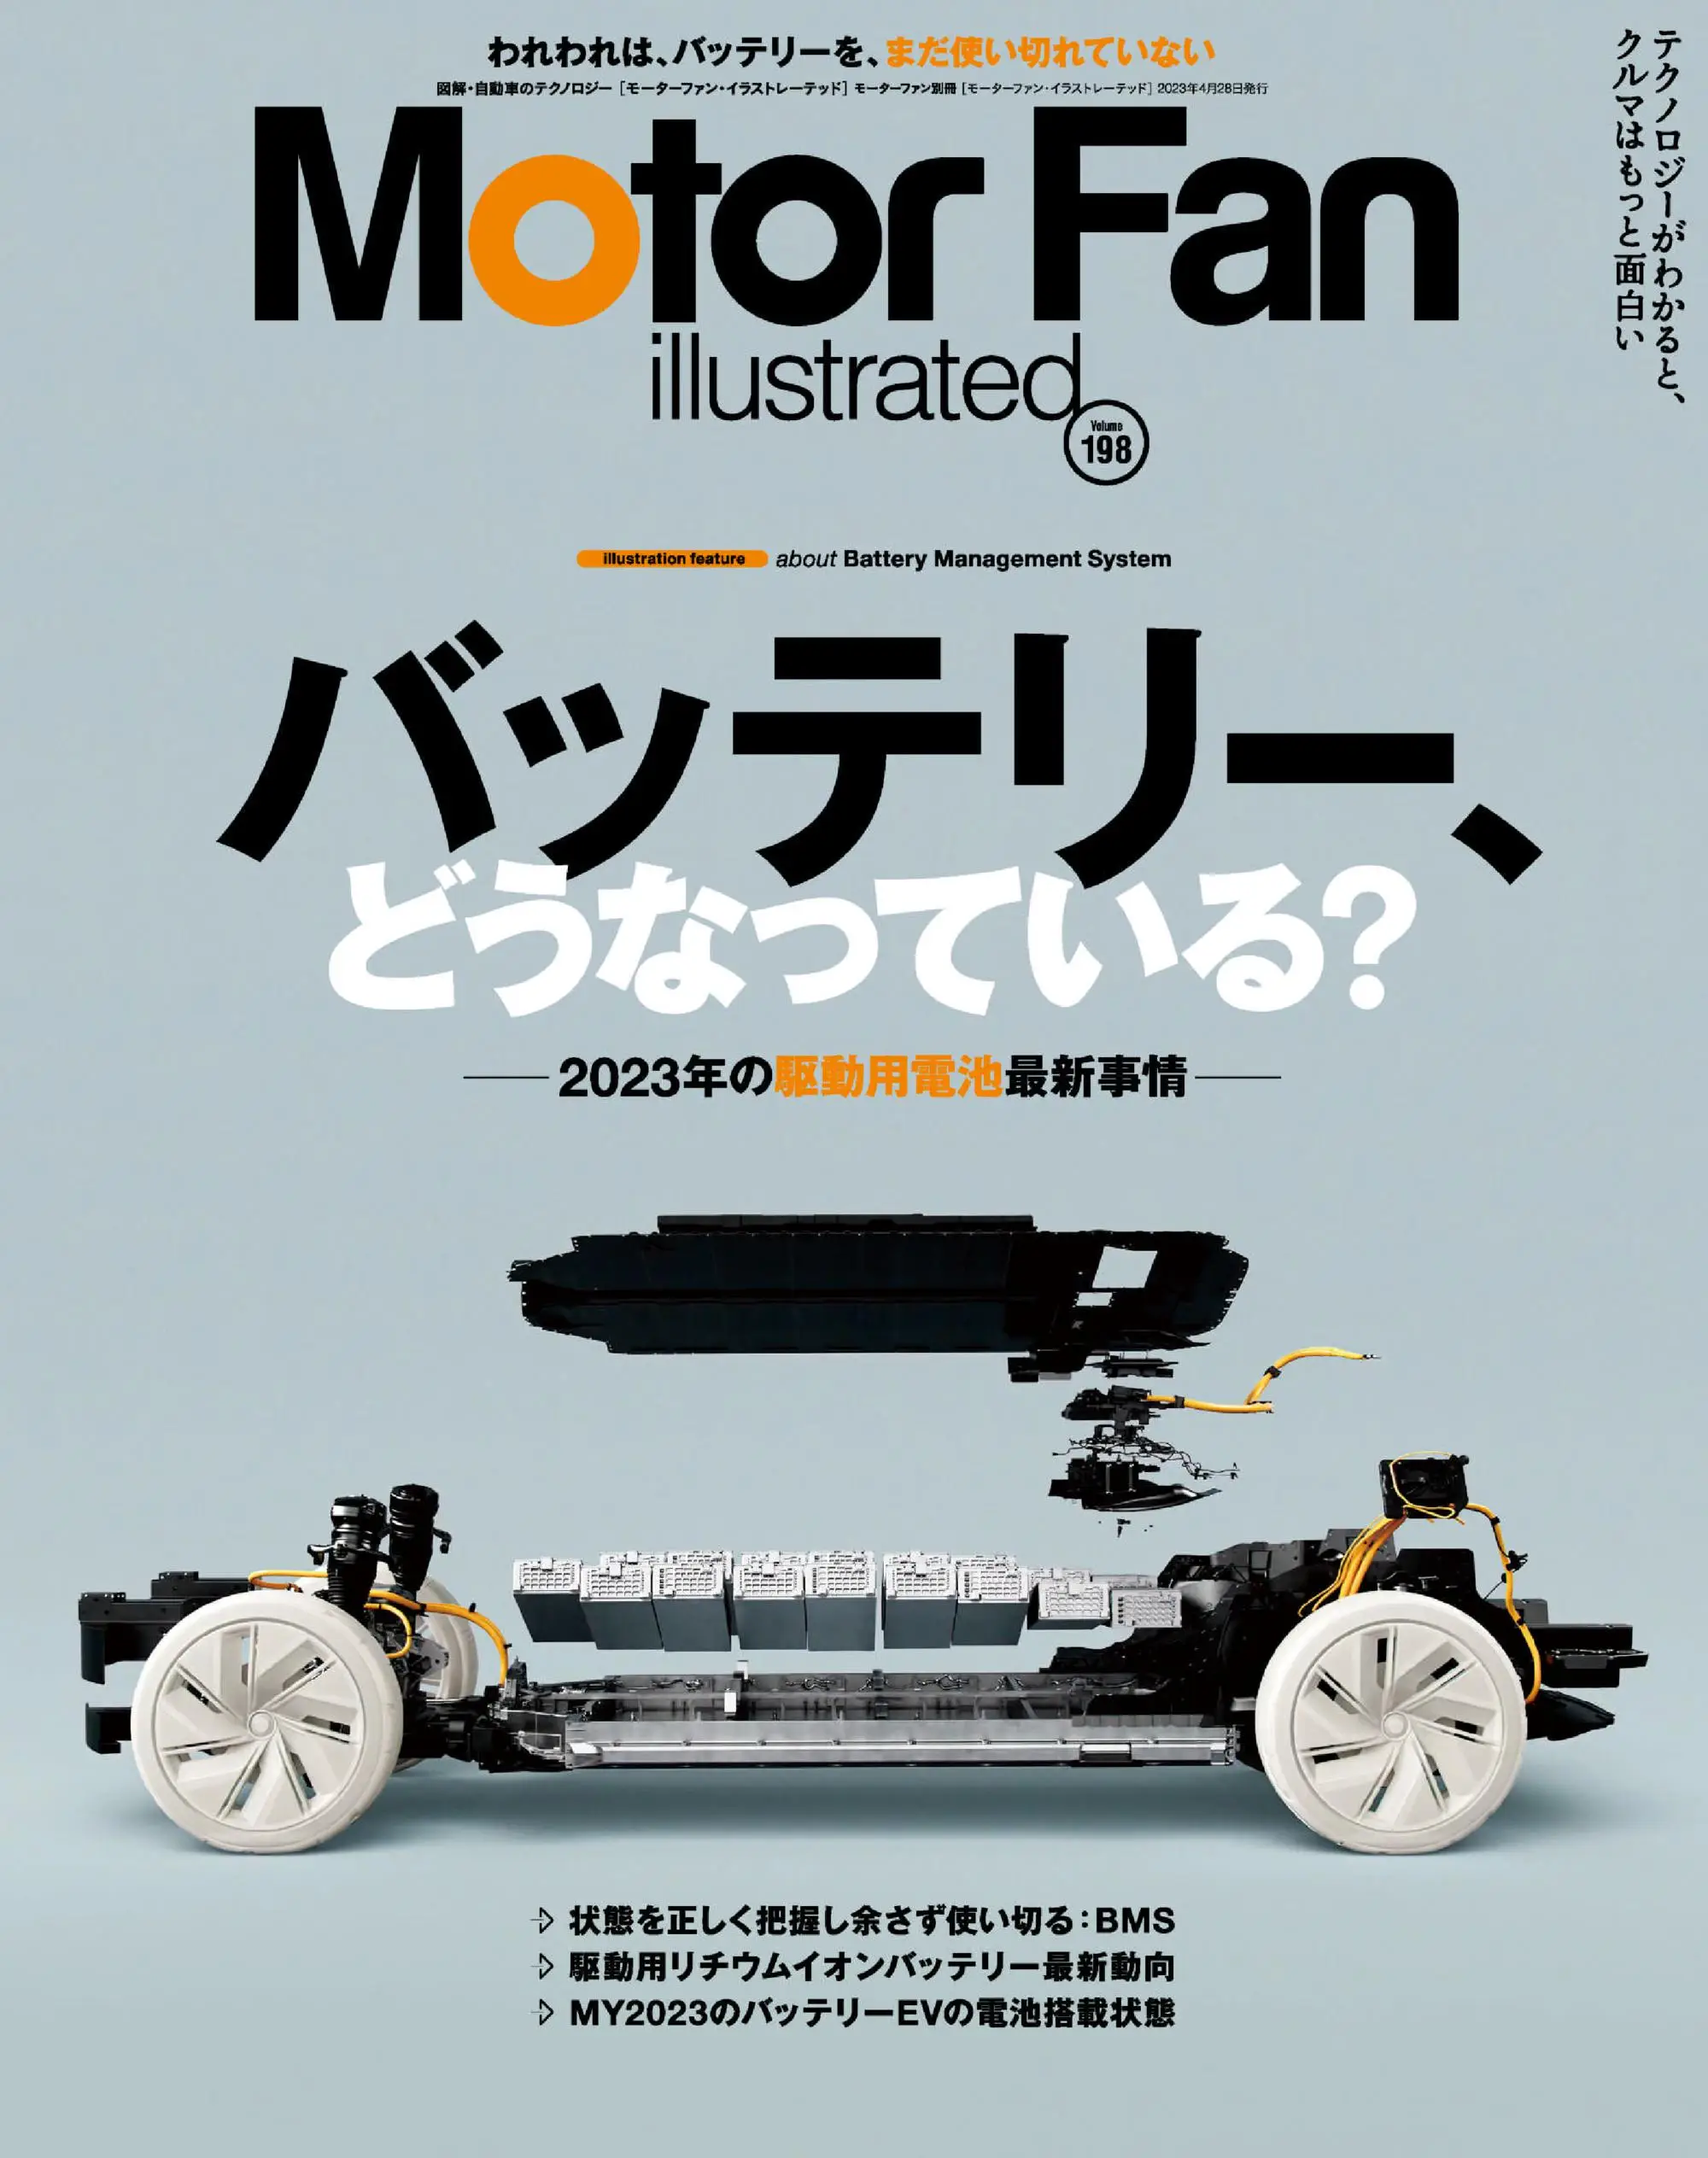 Motor Fan illustrated　モーターファン・イラストレーテッド 2023年4月28日